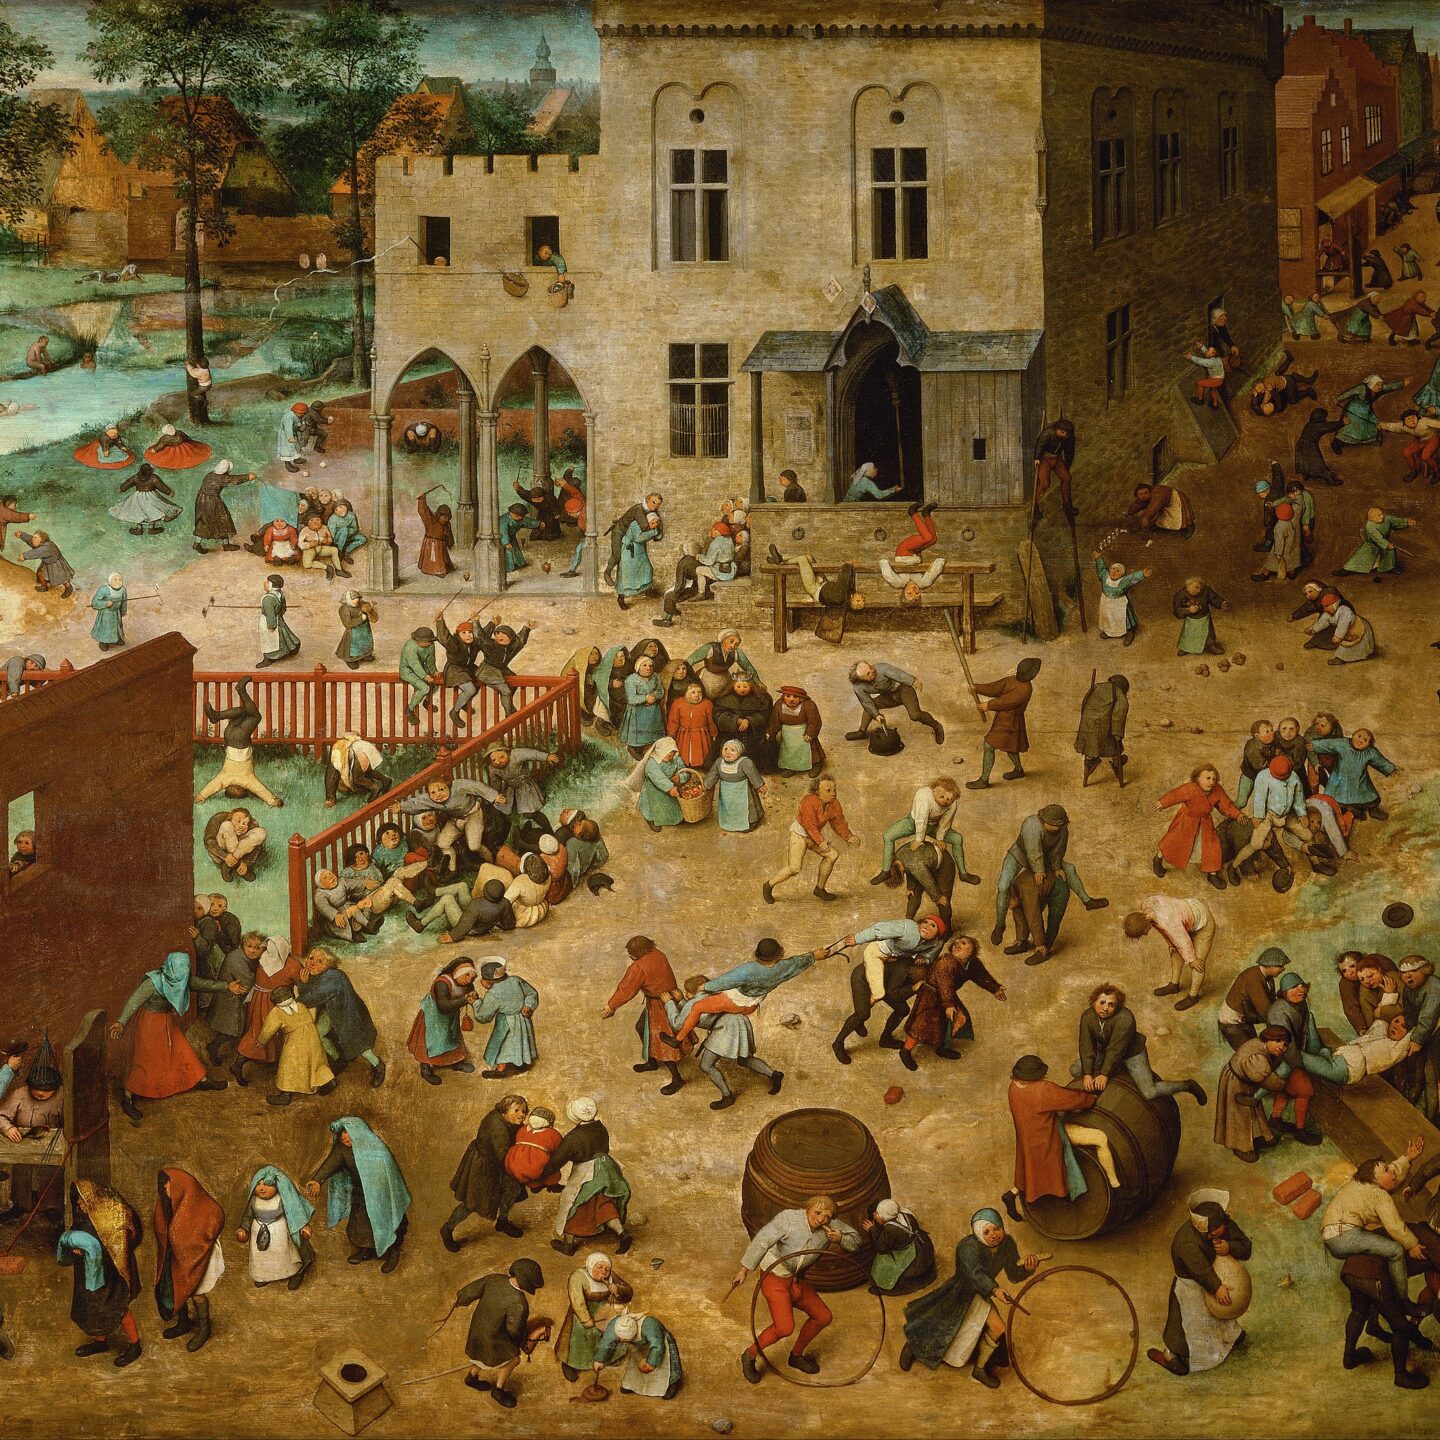 Children’s Games, Peter Bruegel the Elder, 1560